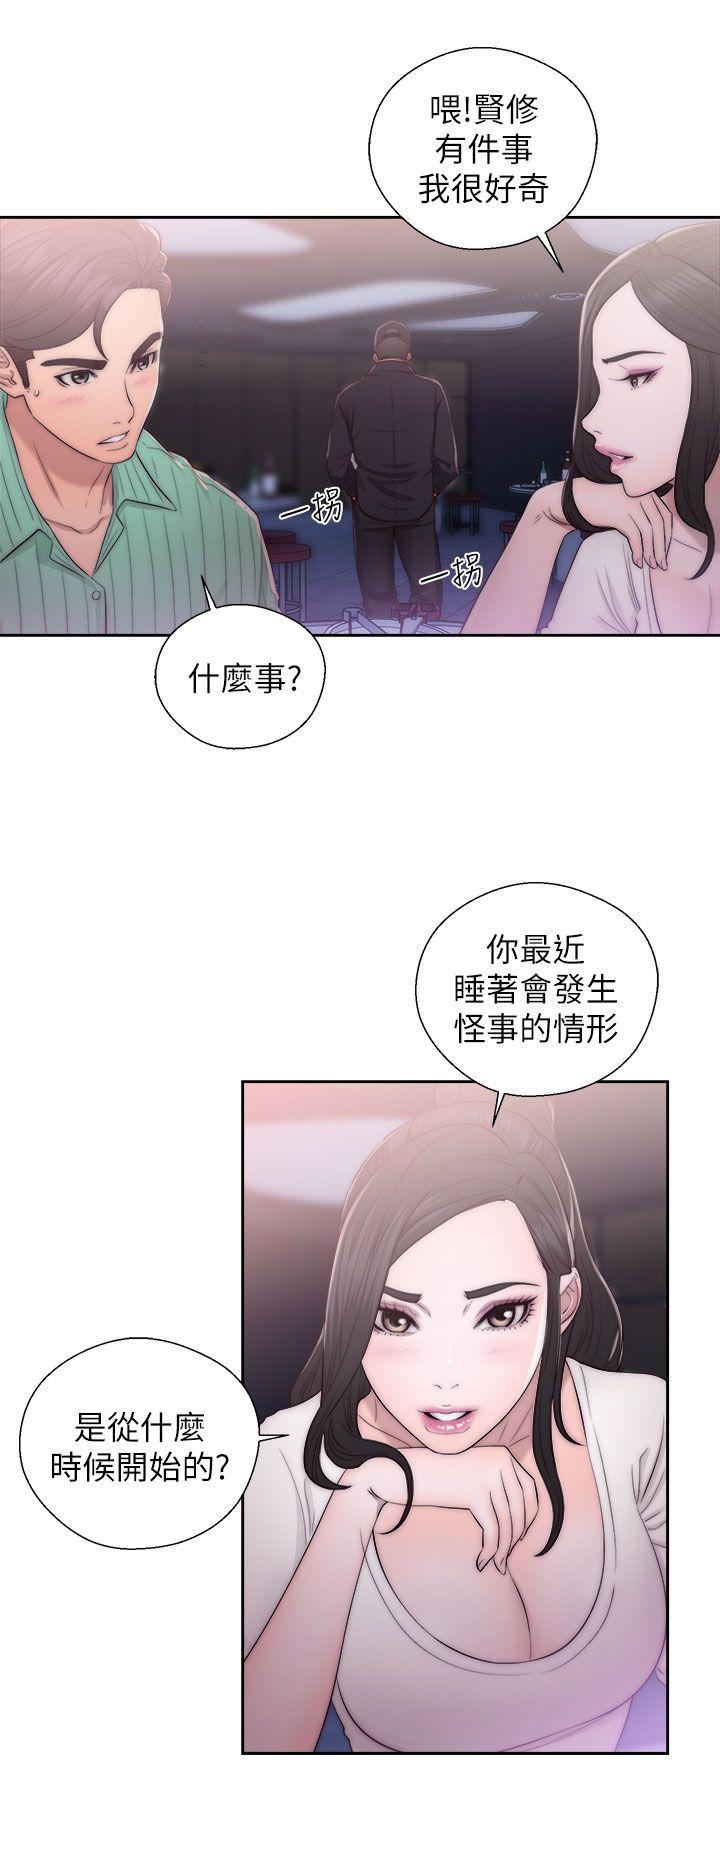 韩国污漫画 青春:逆齡小鮮肉 第16话 14